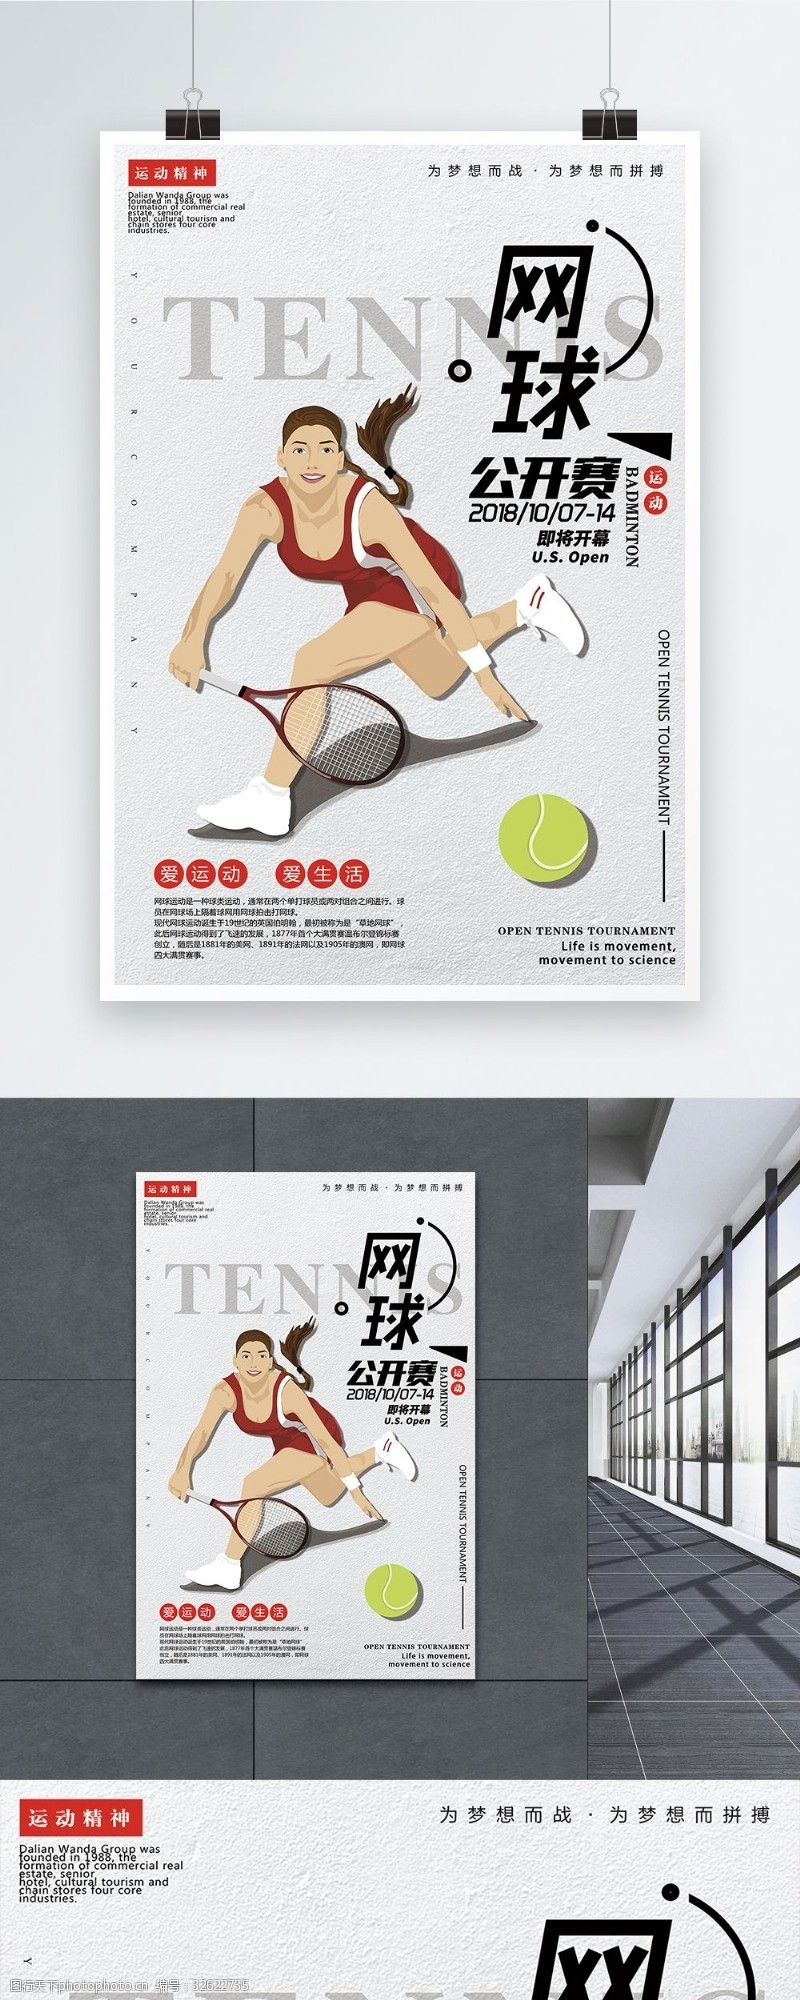 体育比赛网球公开赛宣传海报